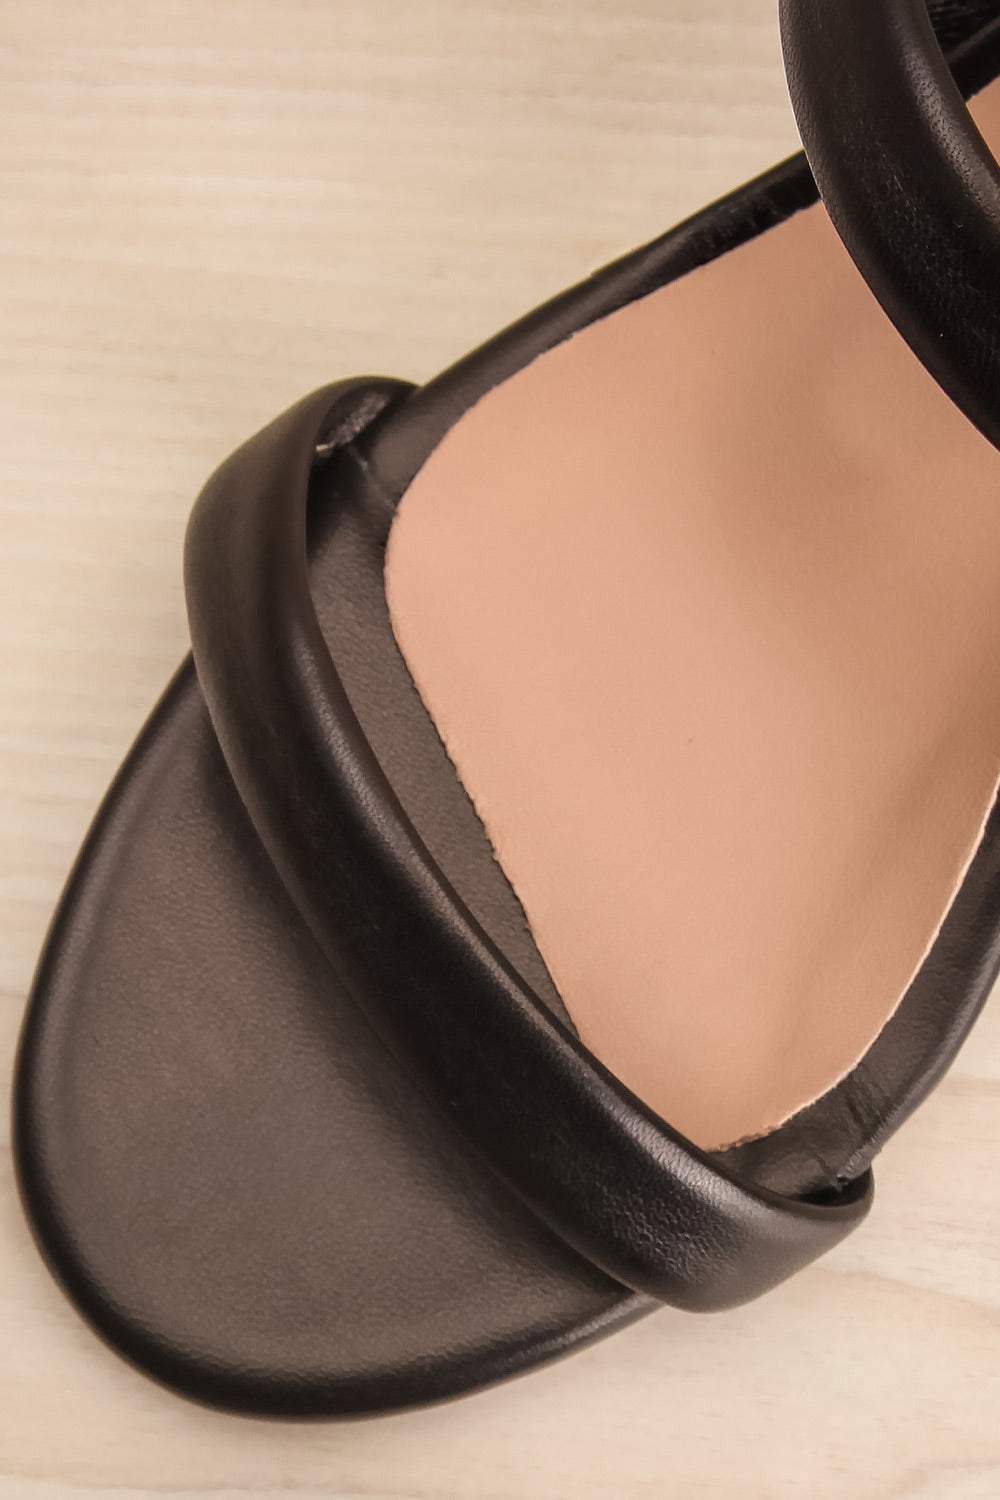 Cubisme Strappy Block Heel leather Sandals | La petite garçonne flat close-up